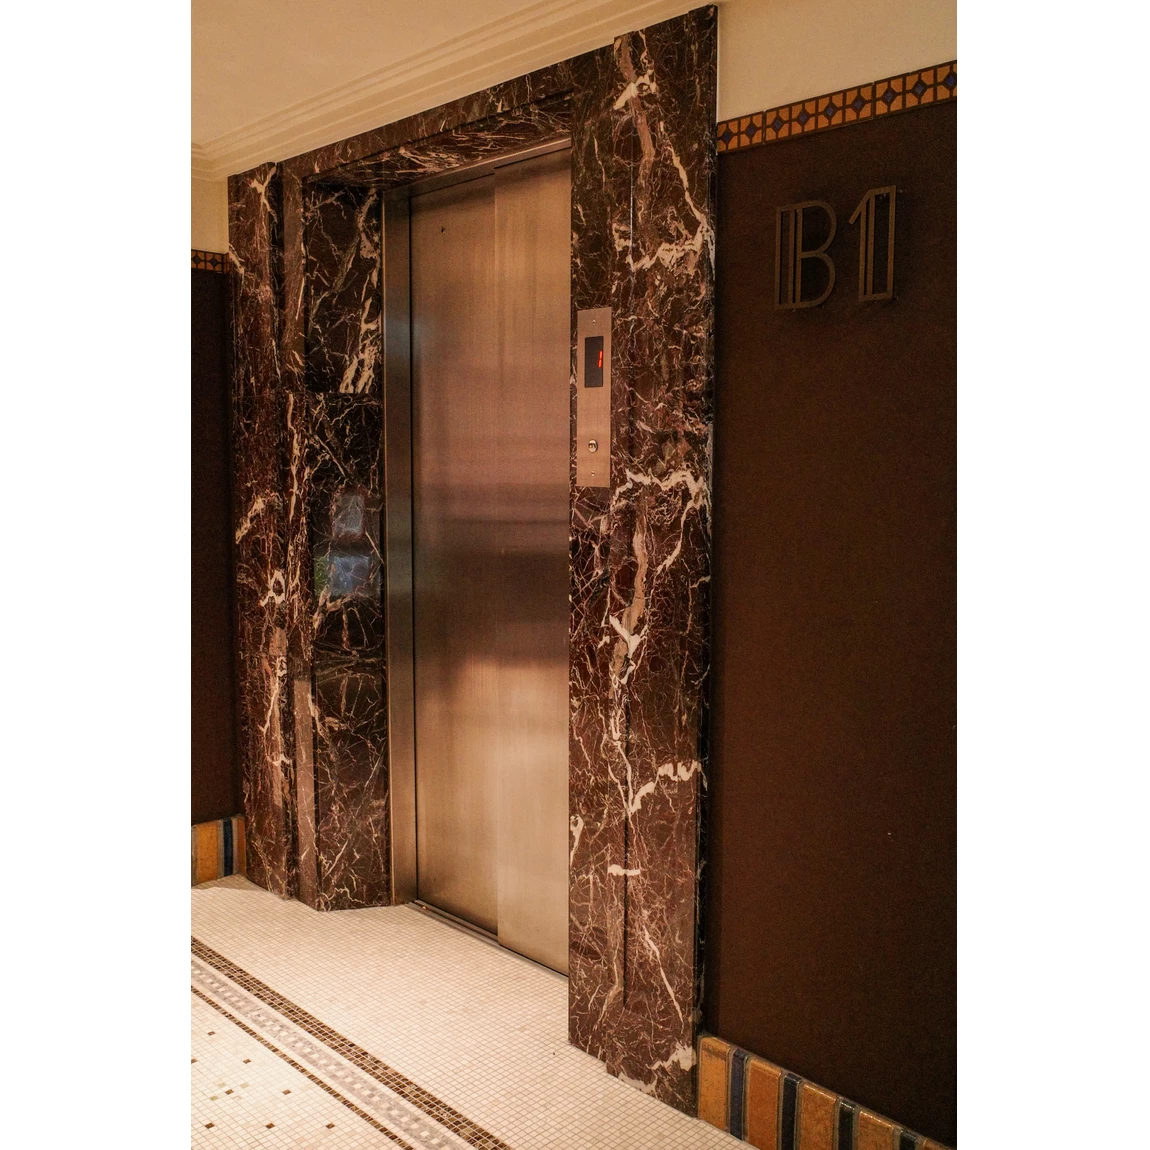 大理石があしらわれたエレベーターは昭和47年まで手動式だった